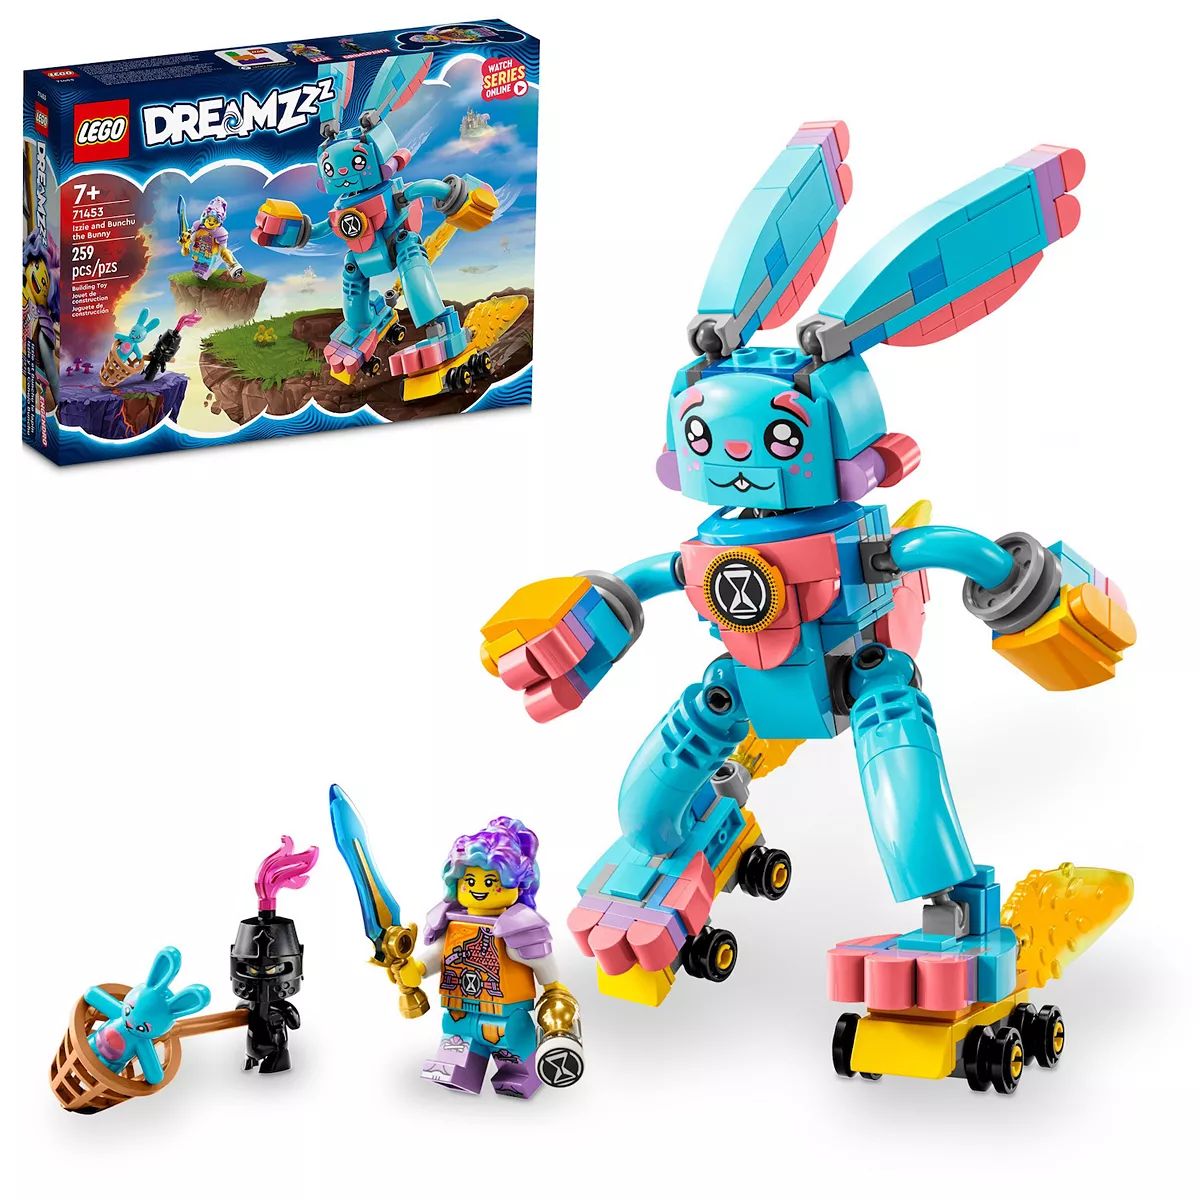 LEGO DREAMZzz Izzie & Bunchu the Bunny Building Toy Set 71453 (259 Pieces) | Kohl's